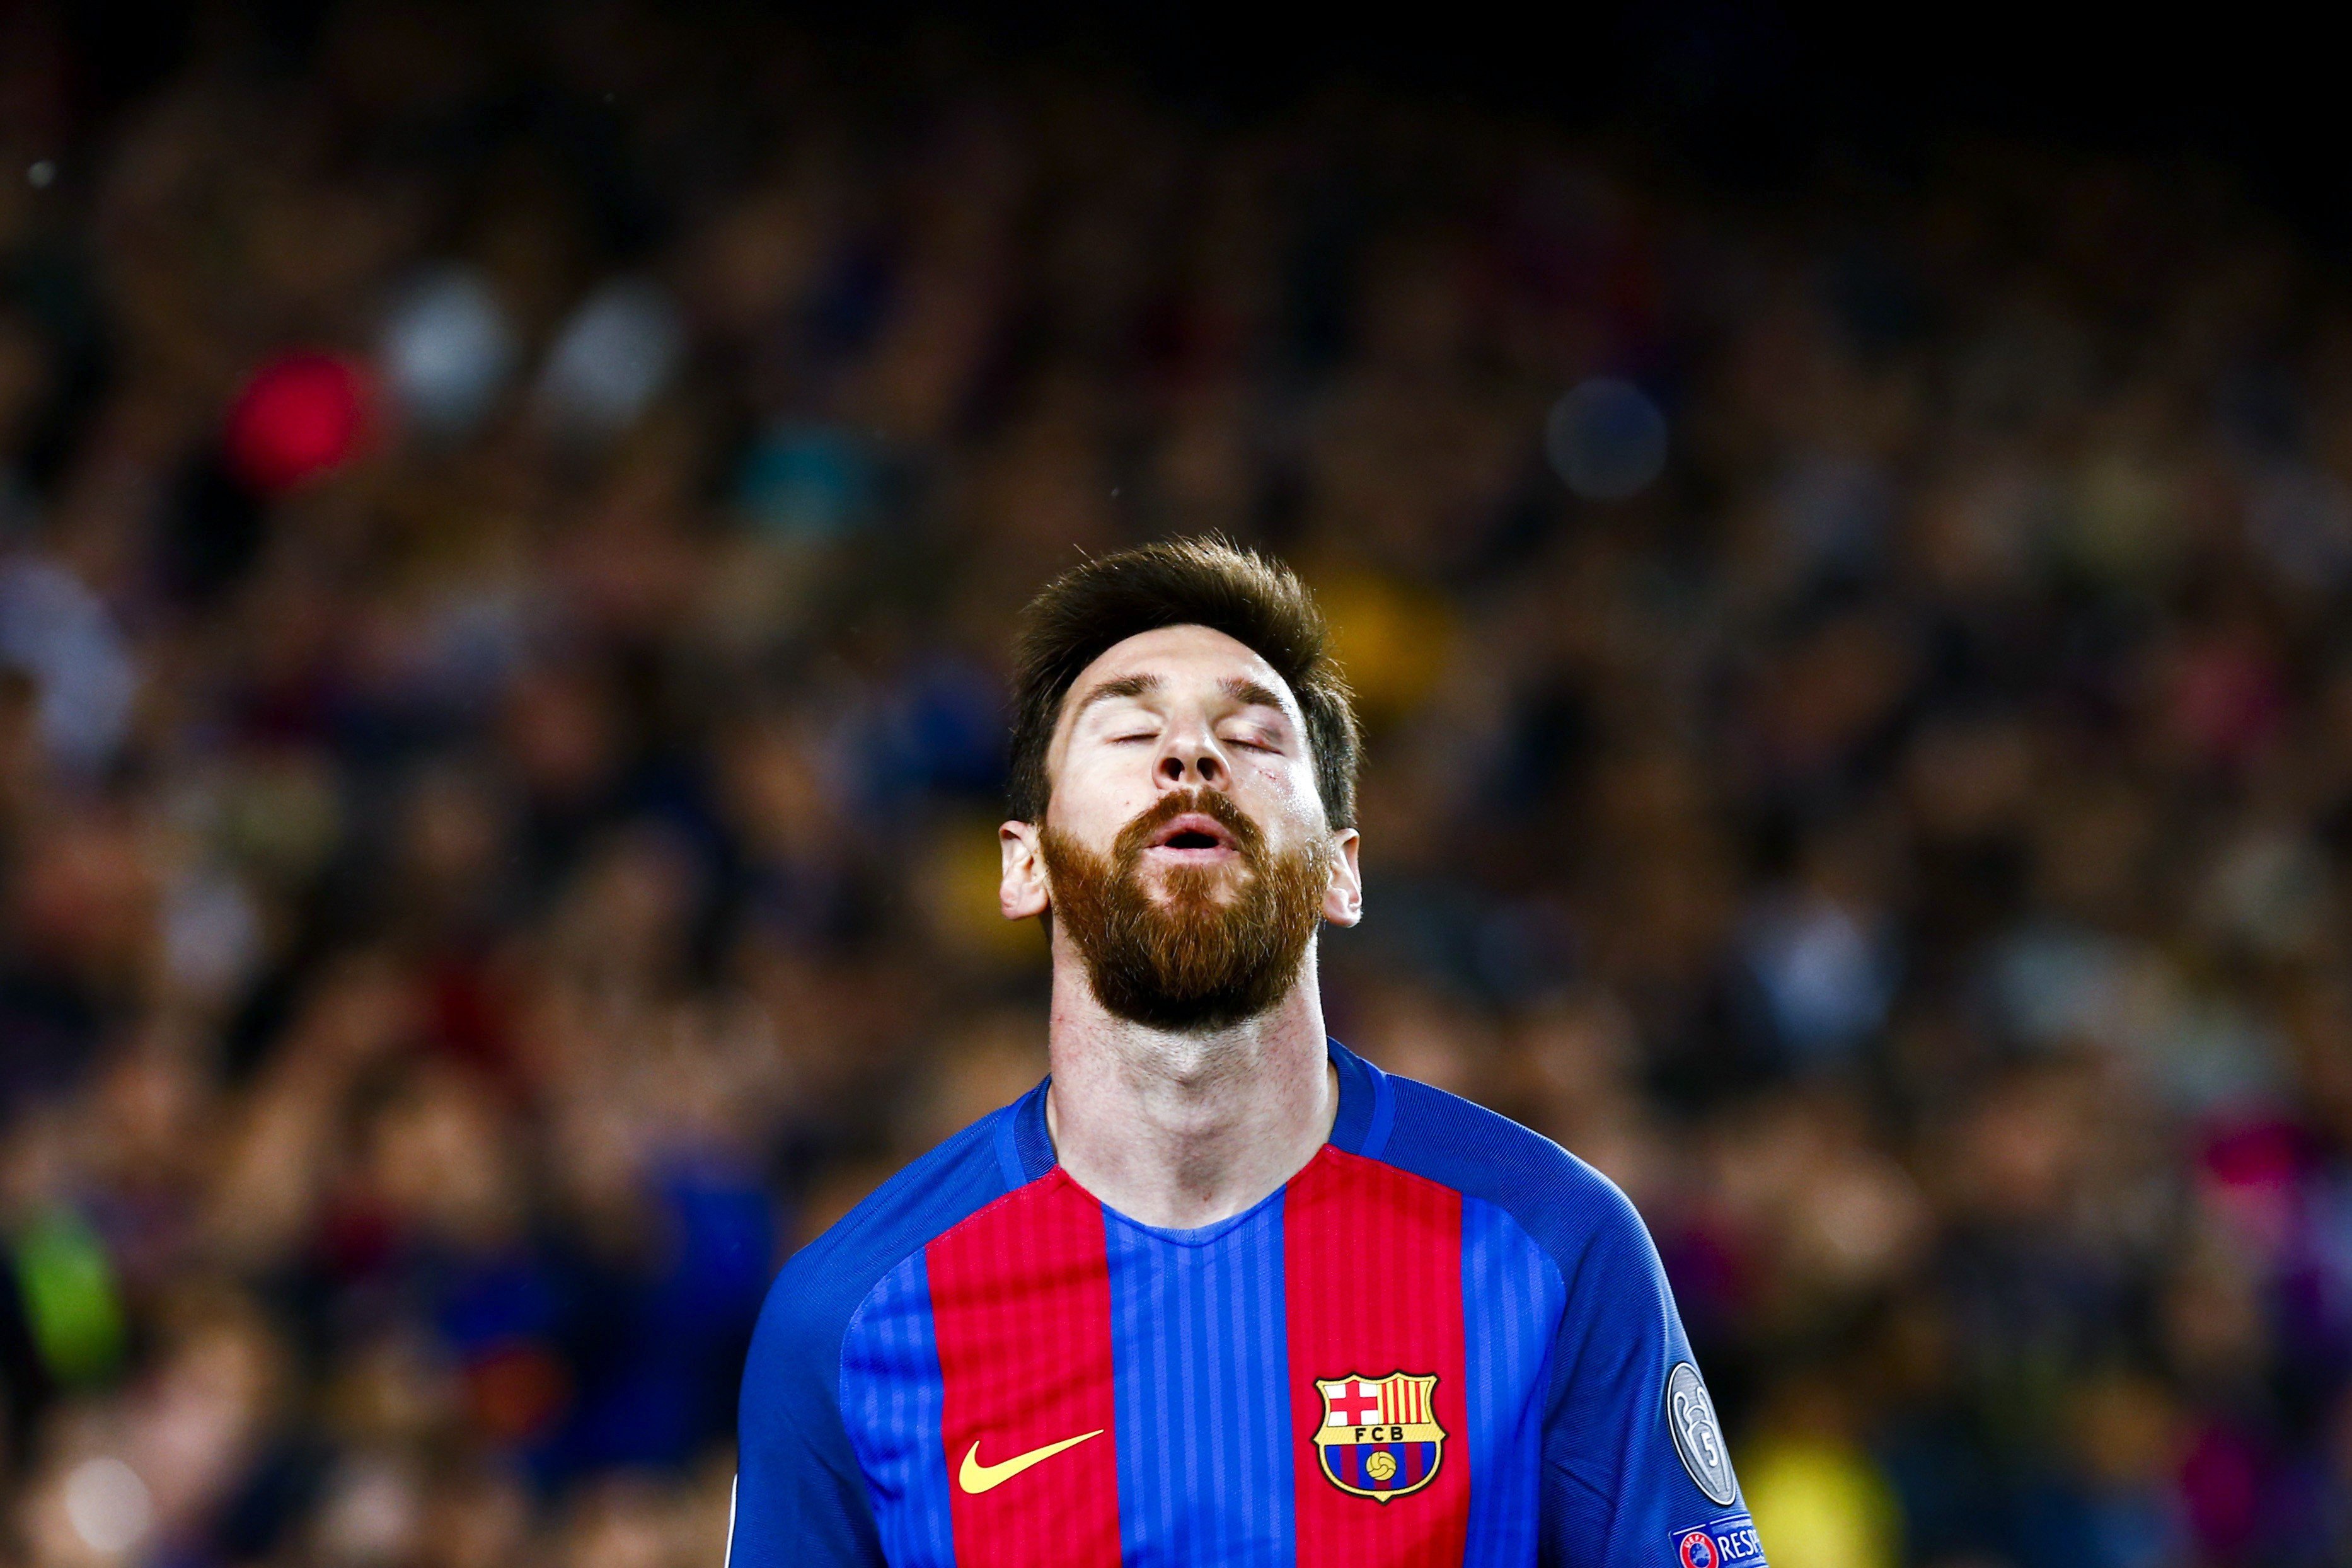 El fiscal pide al Supremo que mantenga la condena de prisión para Messi